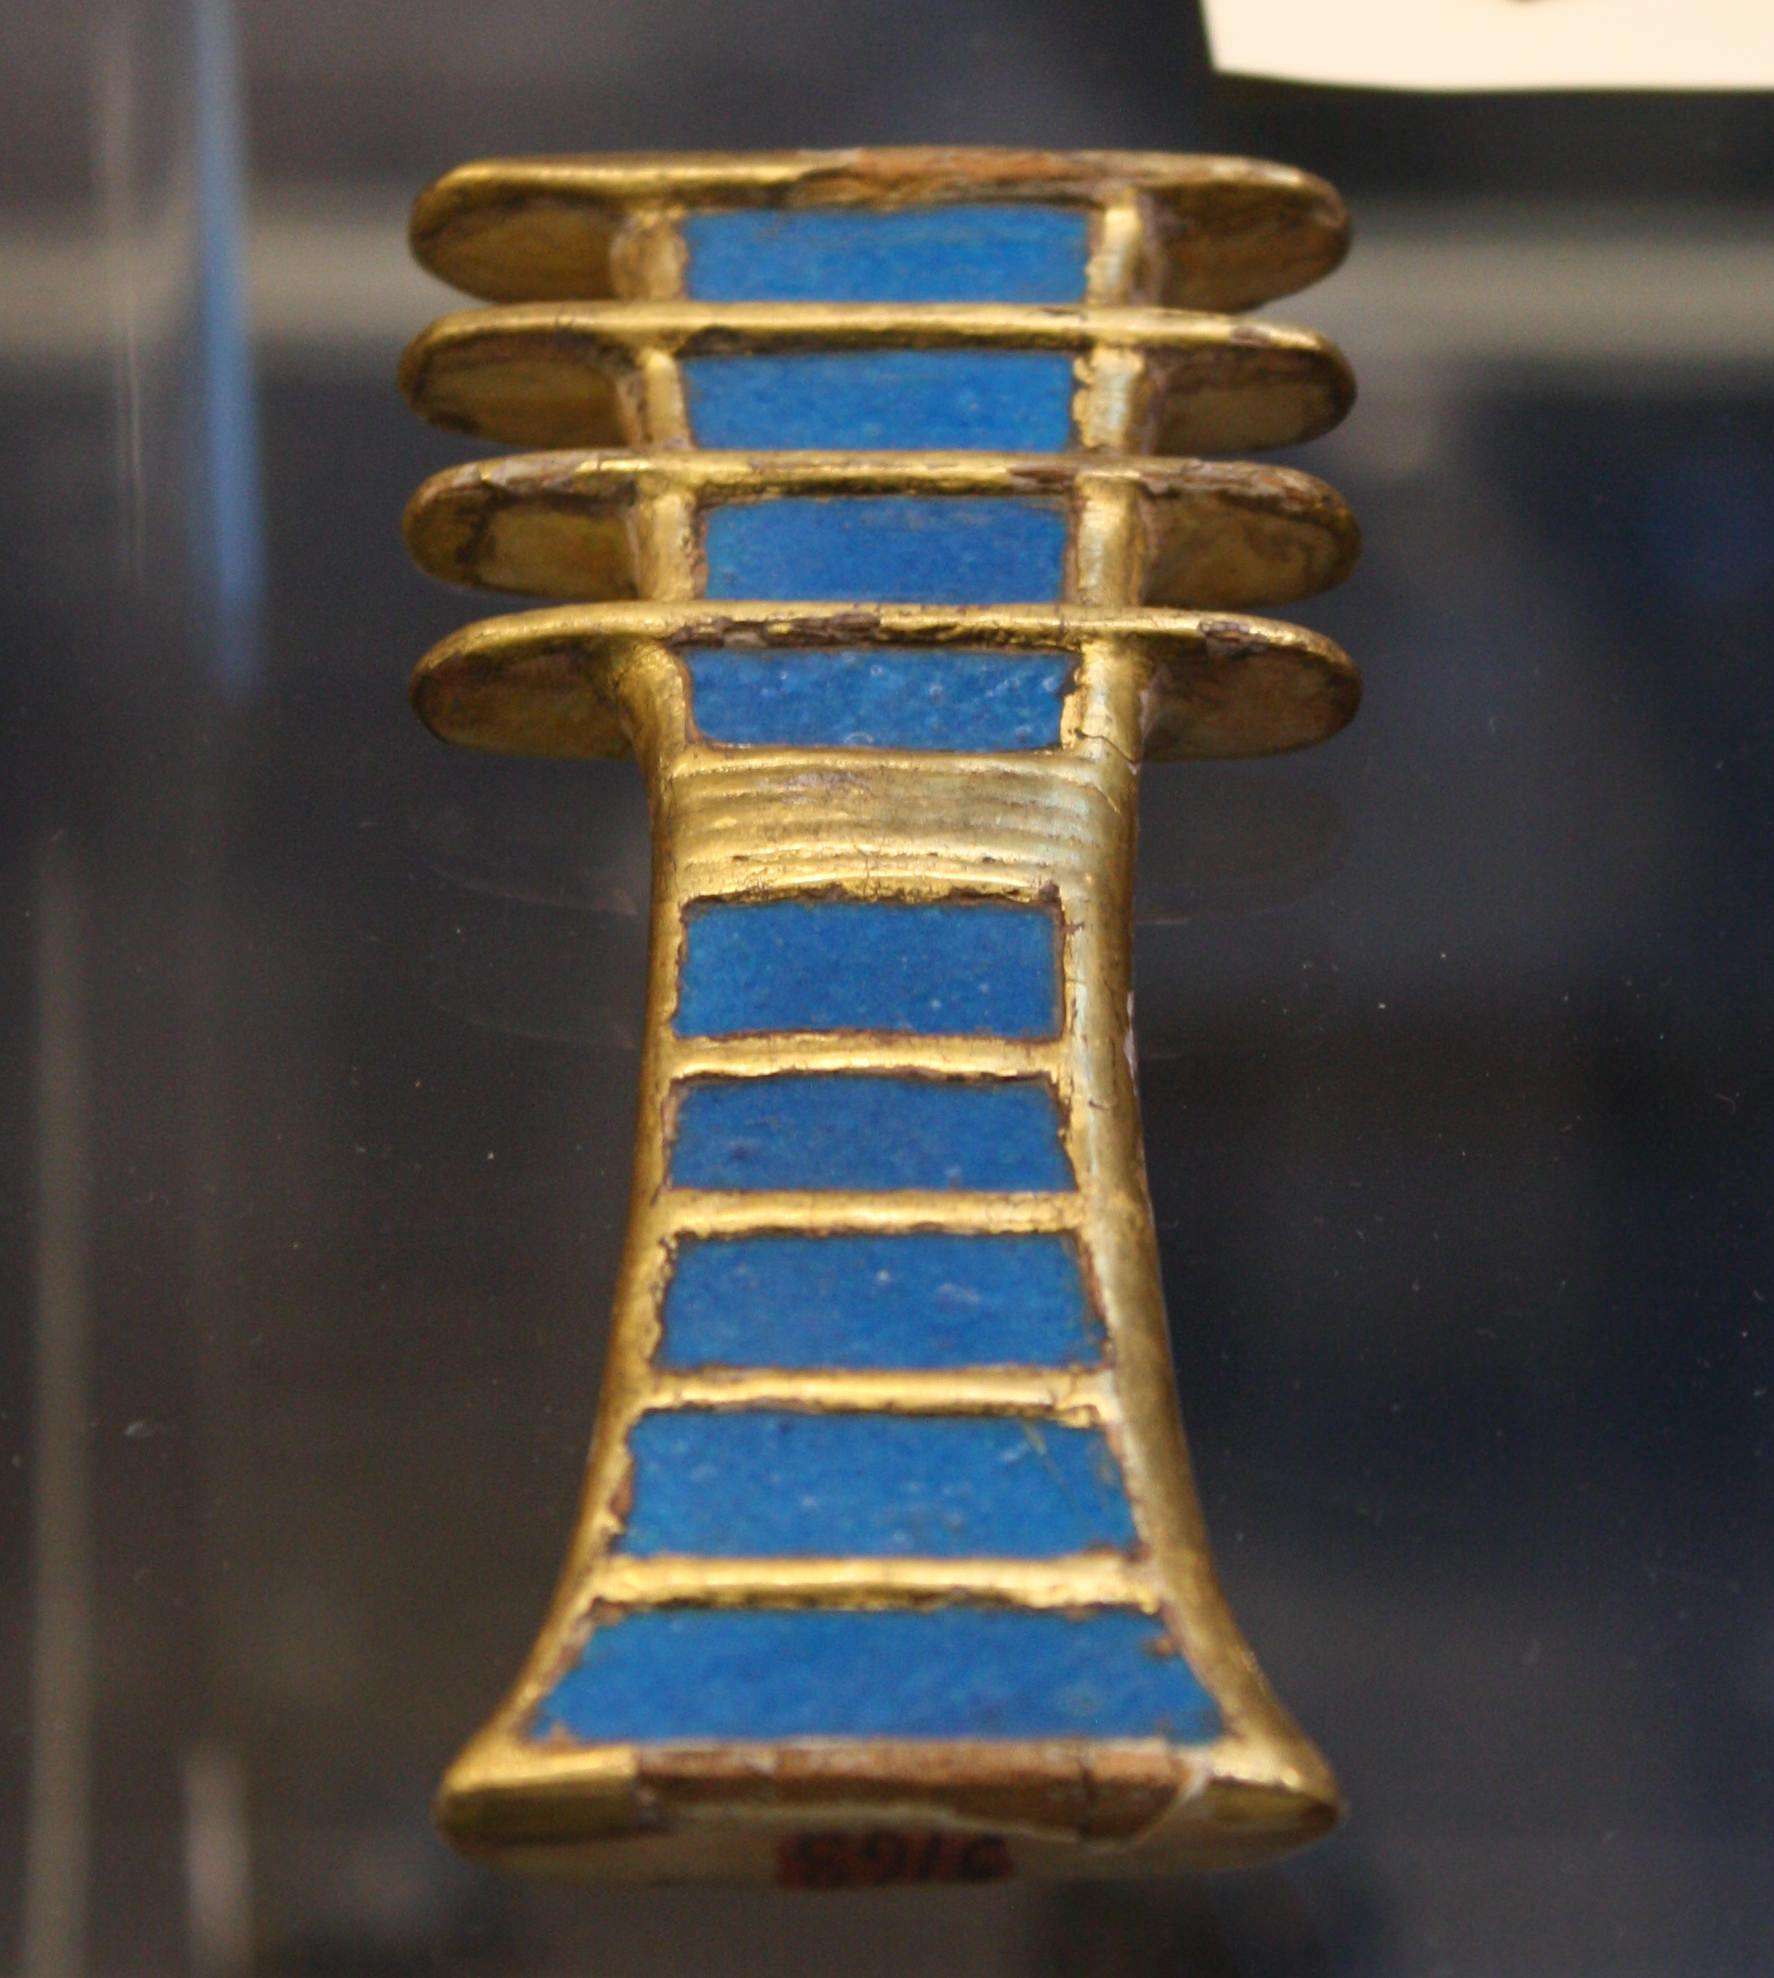 Ib qho ntoo ntoo thiab faience djed amulet (cim ntawm kev ruaj ntseg) los ntawm lub qhov ntxa ntawm poj huab tais Nefertari. Dynasty XIX, 1279-1213 BCE. (Tsev khaws puav pheej Egyptian, Turin)